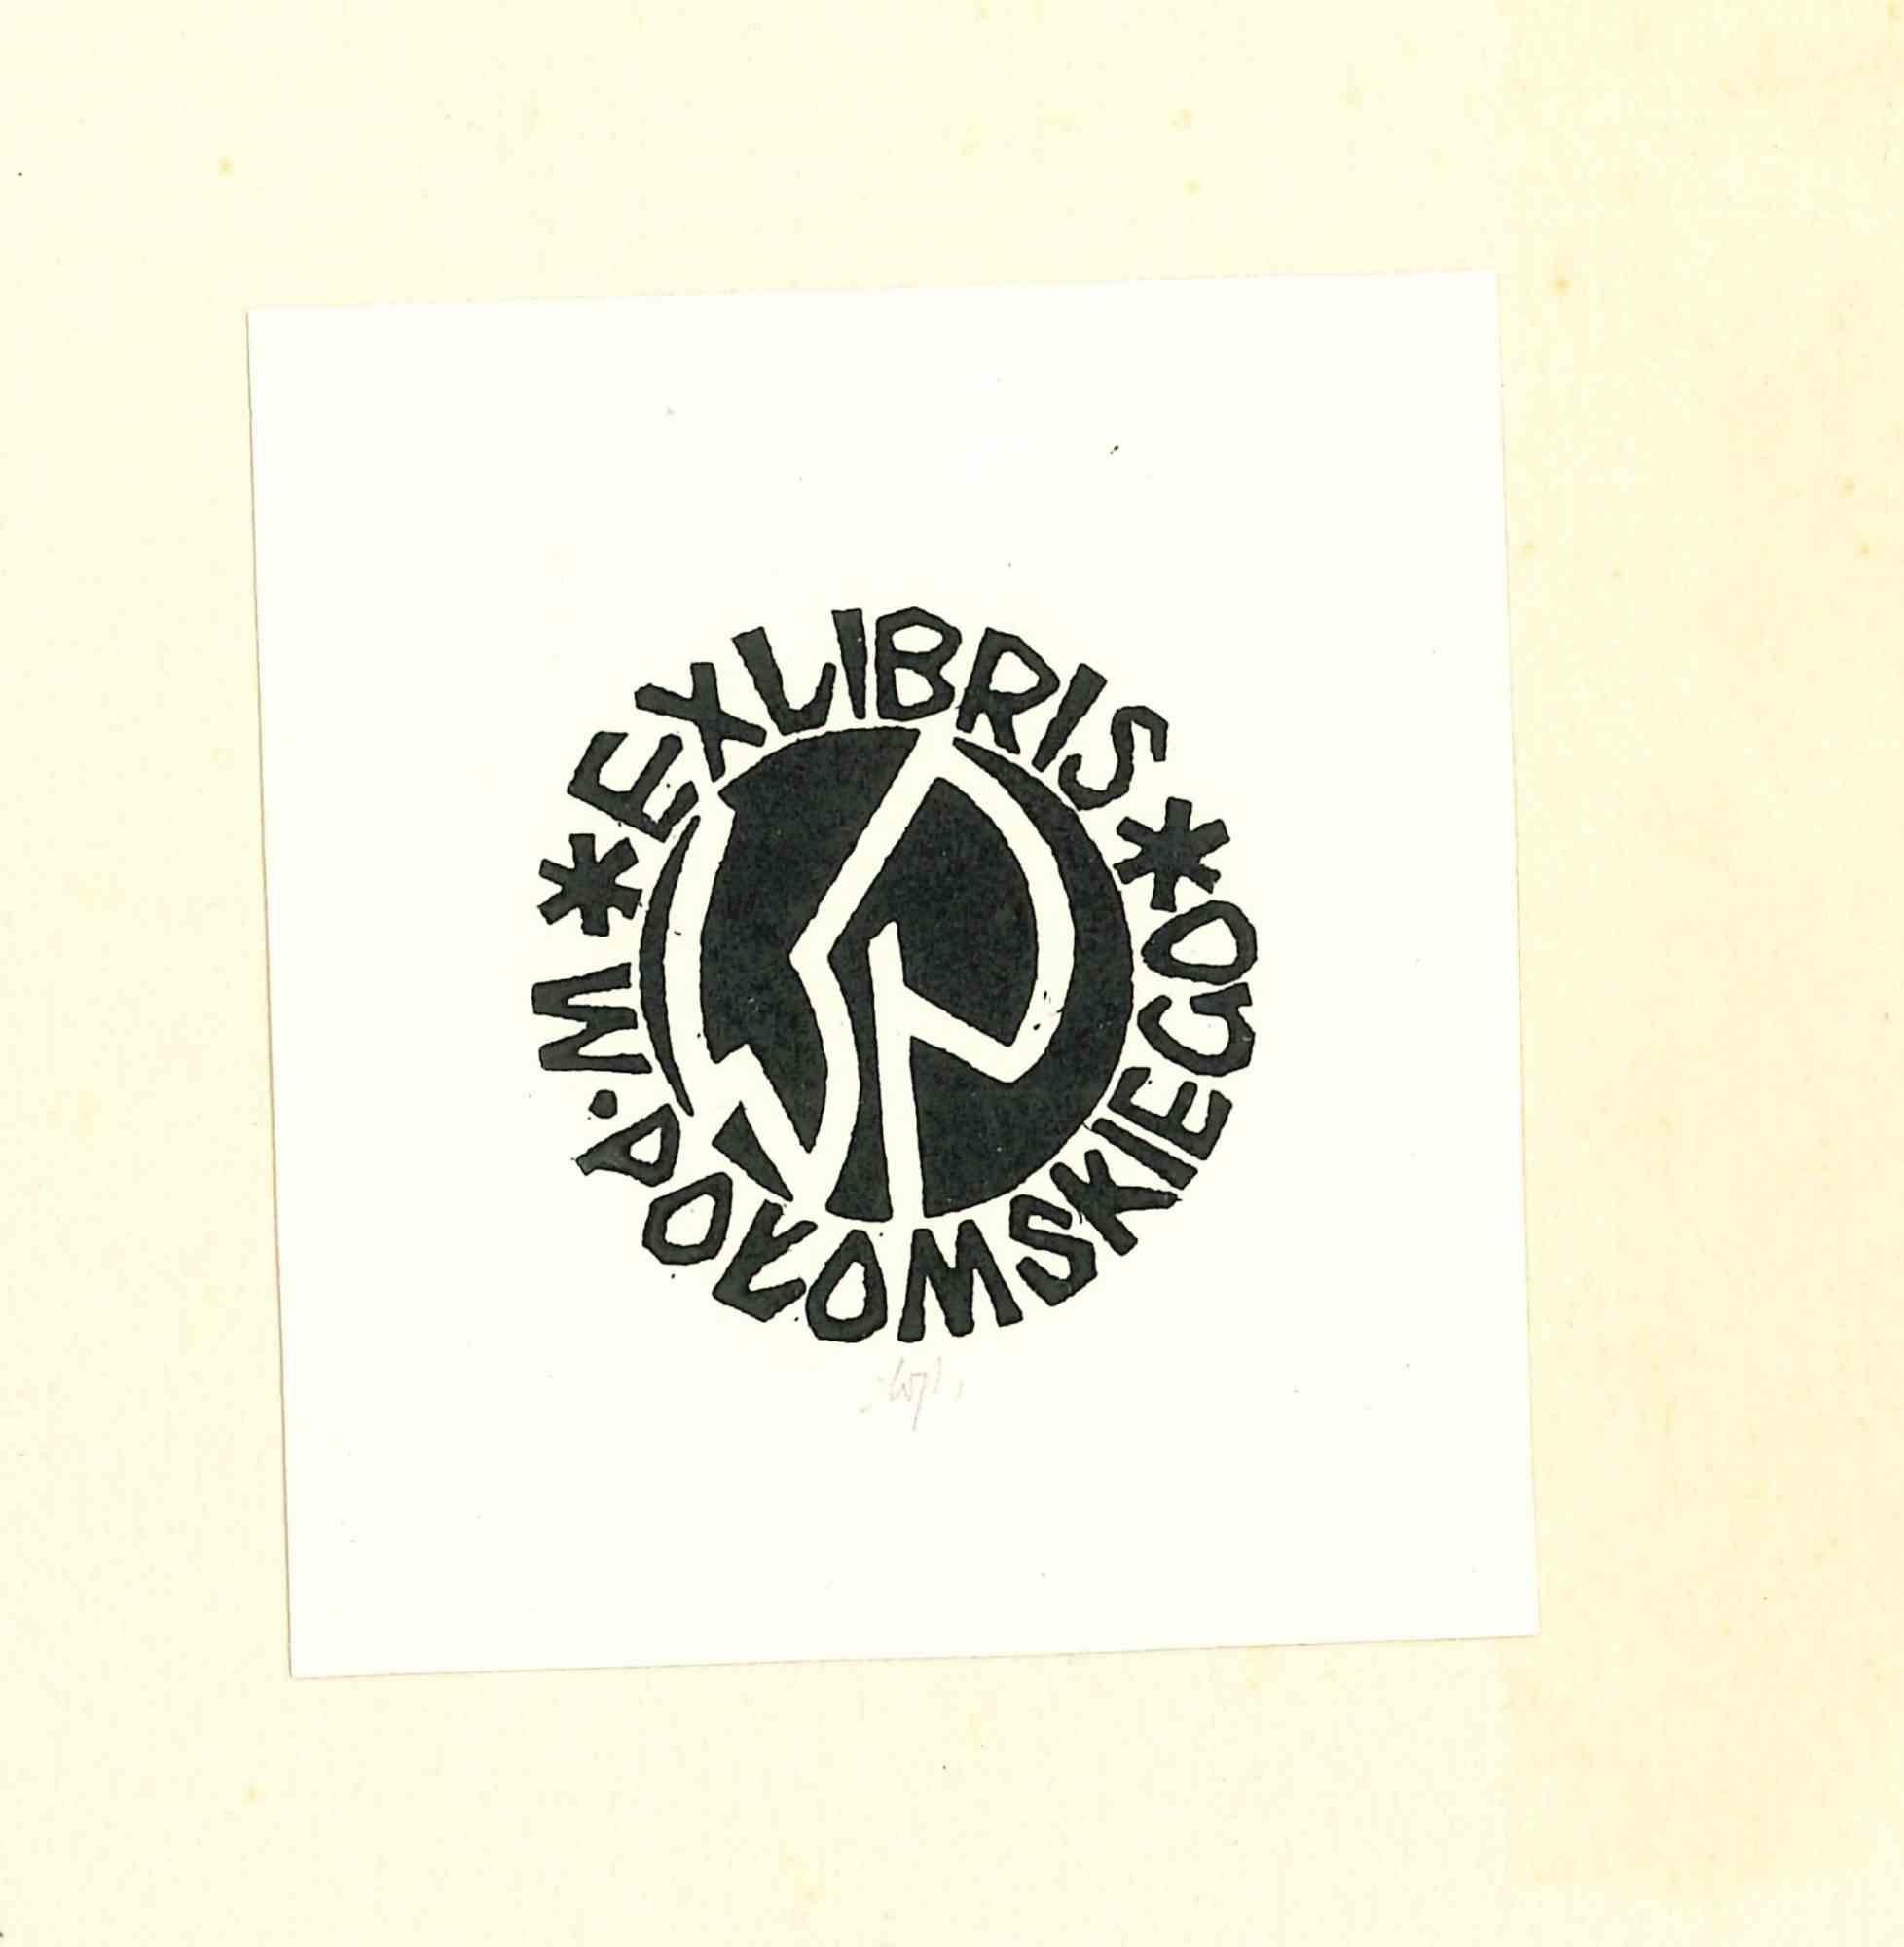 Unknown Abstract Print – Libris Pokomskiego - Original-Holzschnitt - 1940er Jahre